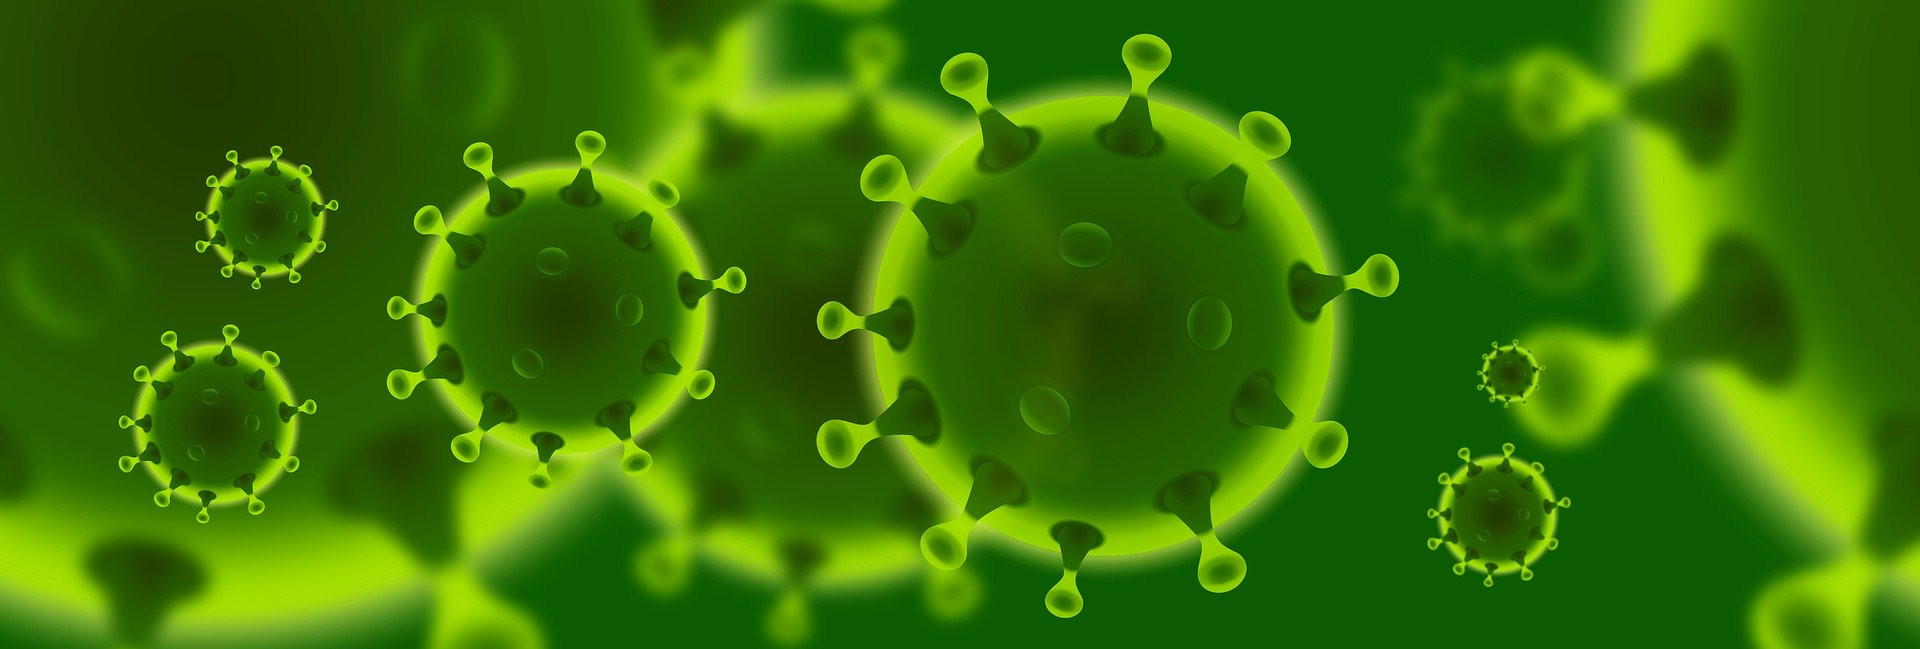 Corona-Viren in grün